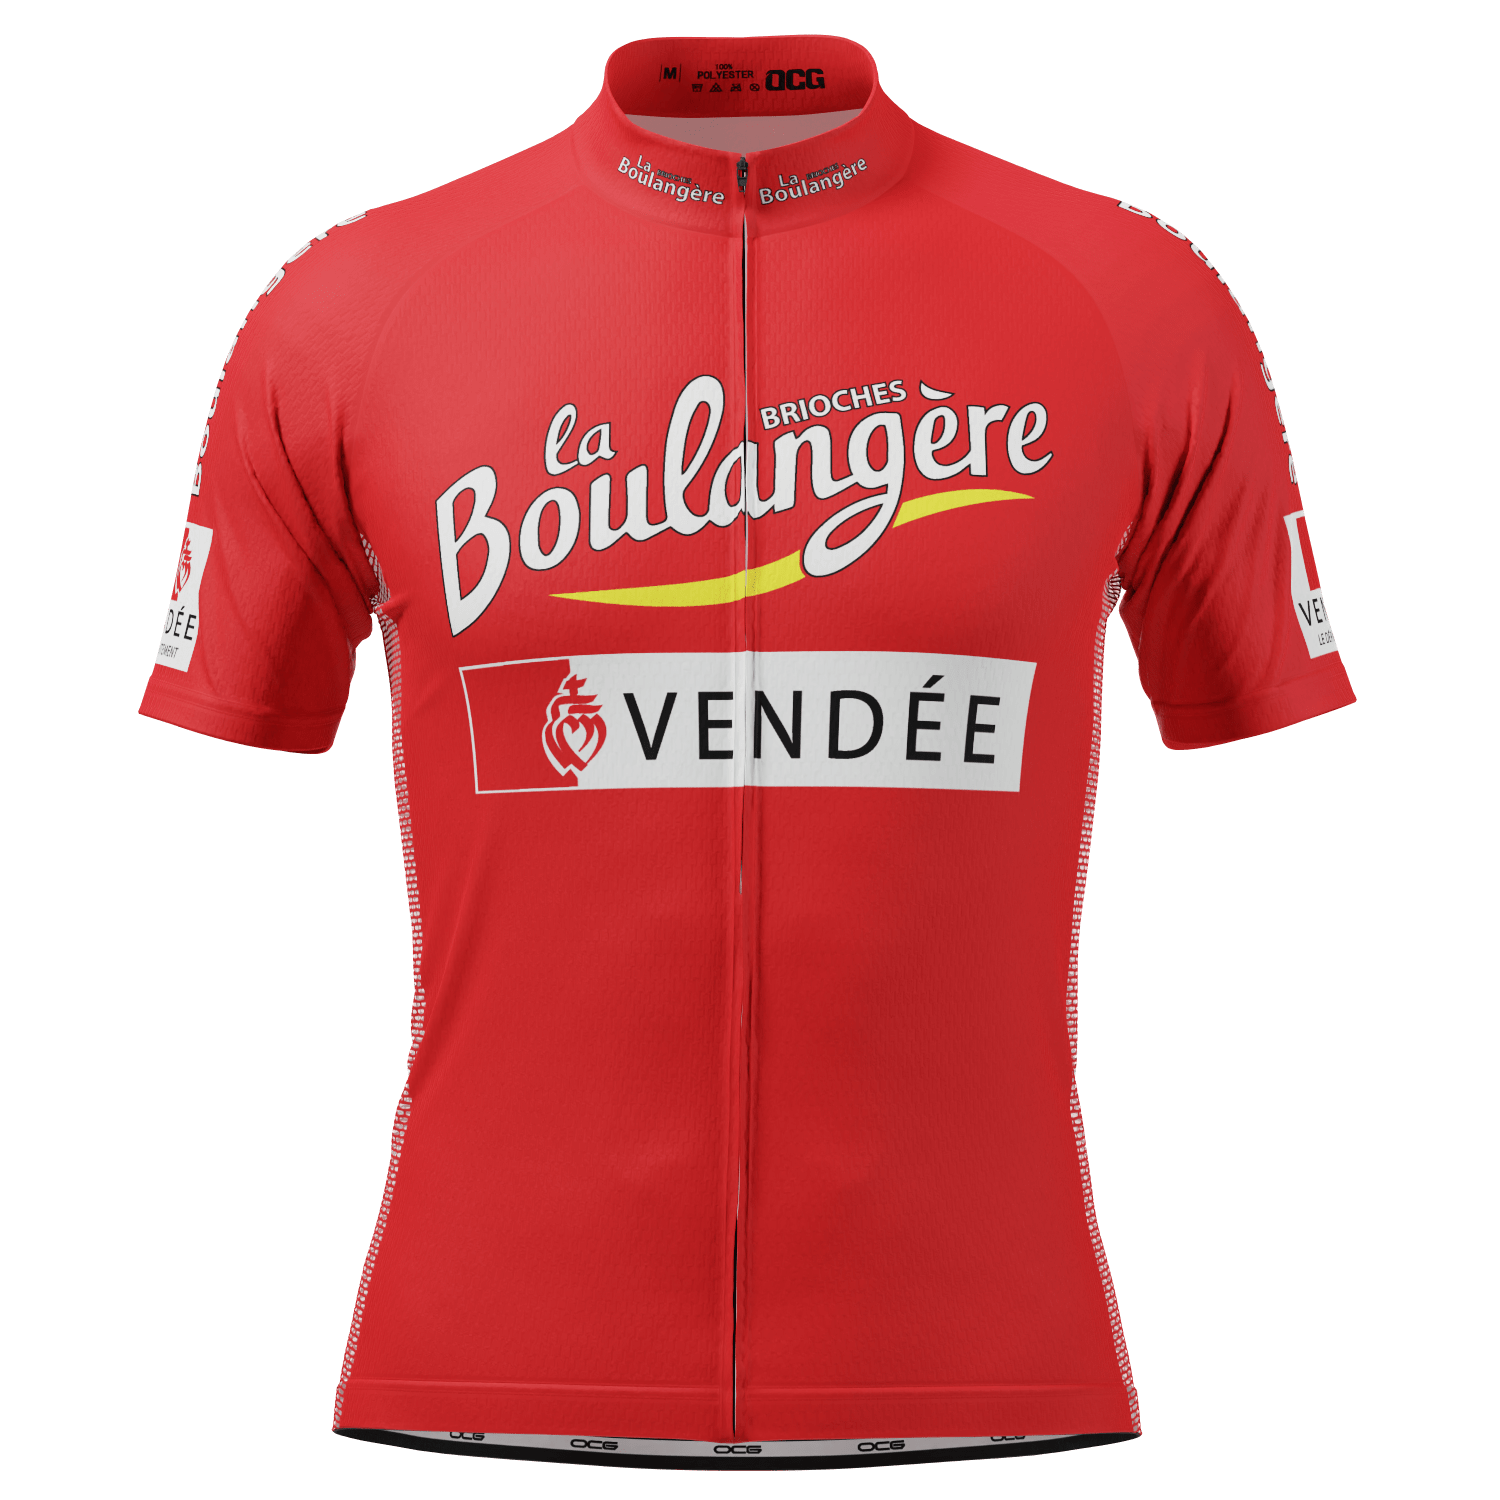 Men's Baker Short Sleeve Cycling Jersey